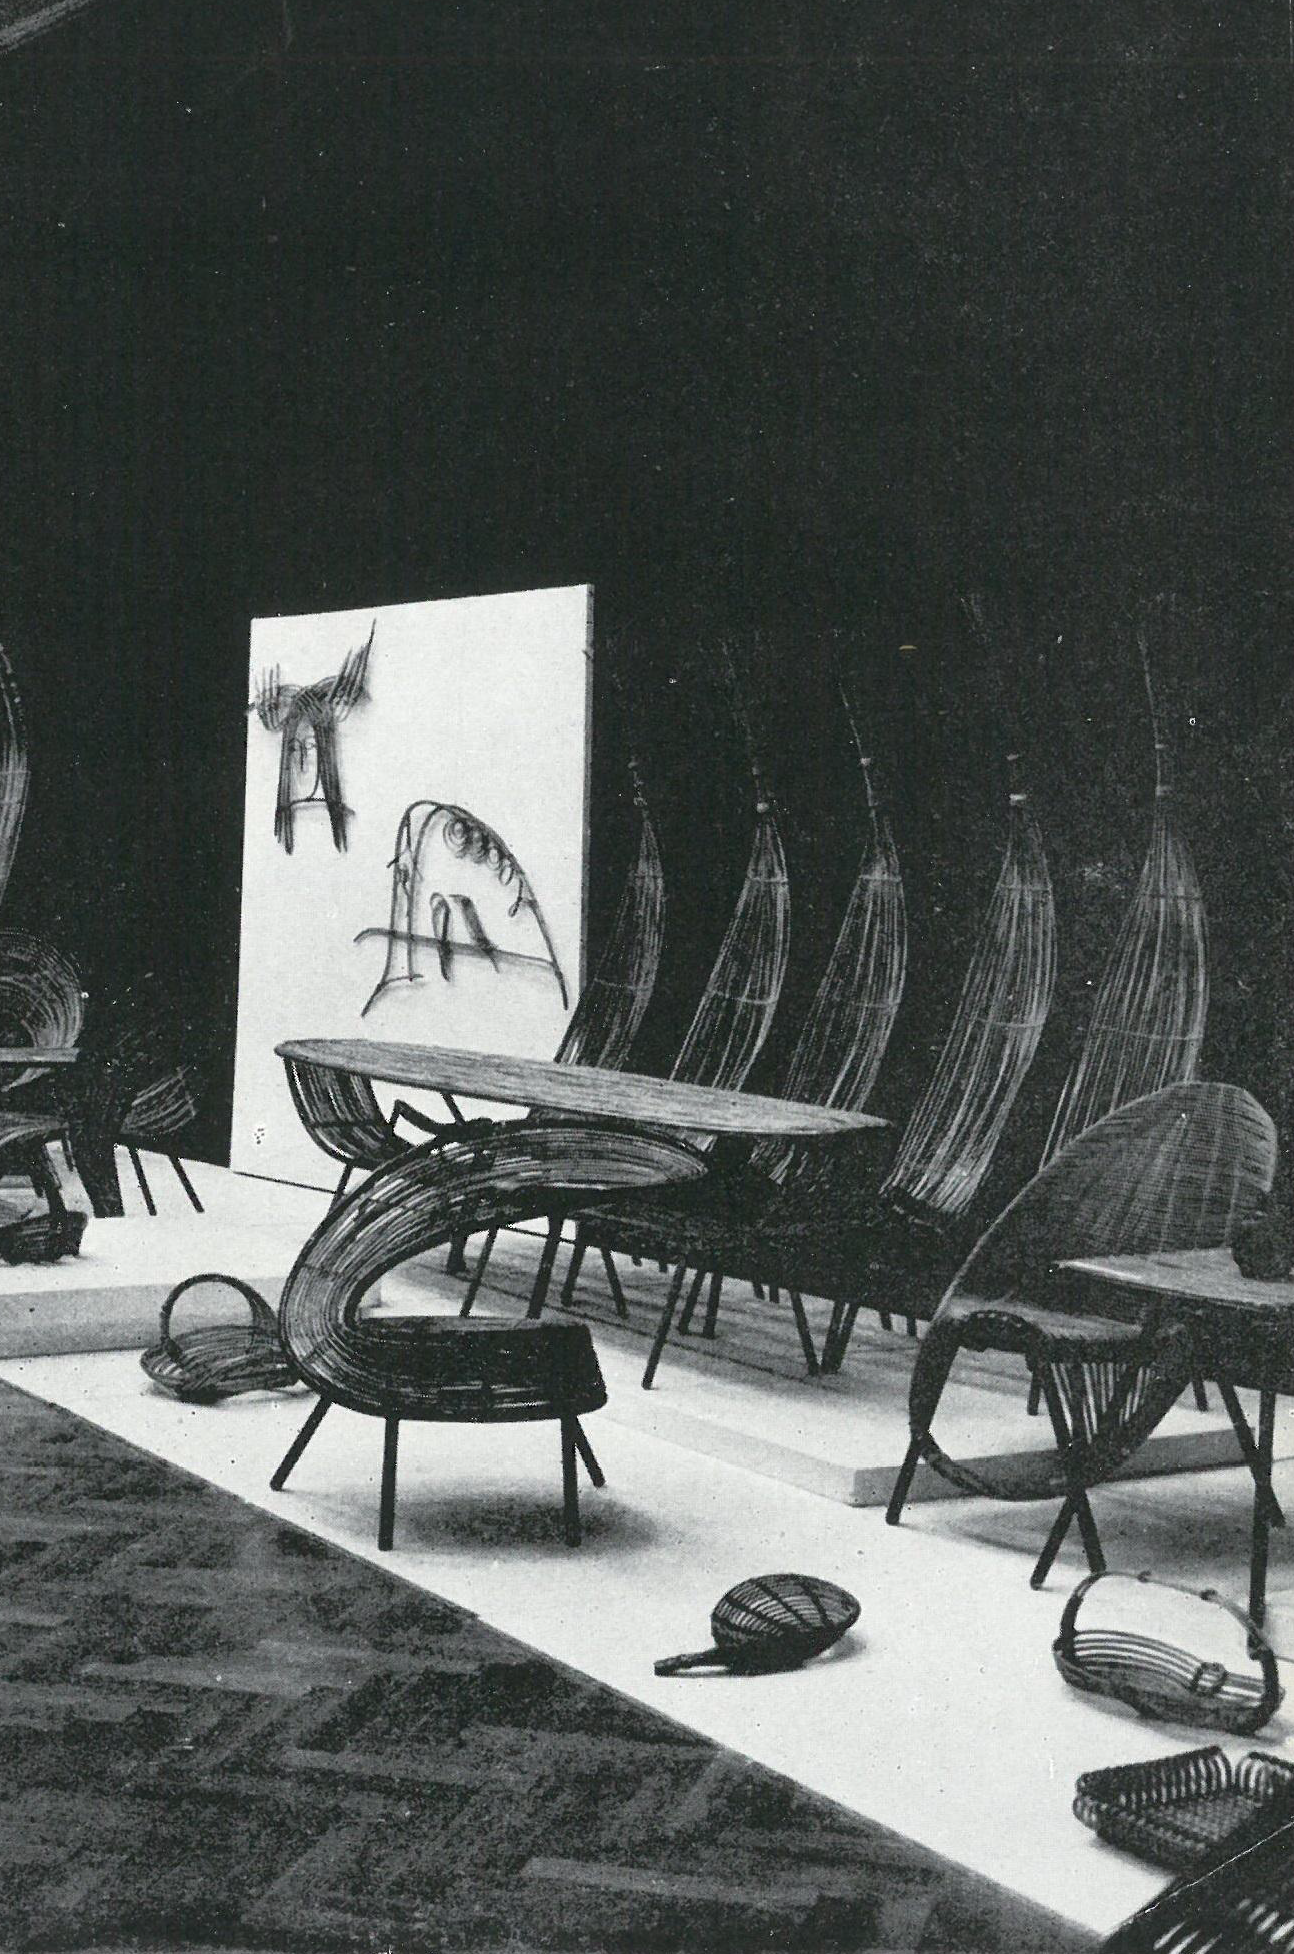 Ekspozycja Władysława Wołkowskiego na wystawie "40 lat Ładu" w kwietniu 1967 roku w warszawskiej Zachęcie. Na przodzie widoczne krzesło oraz stolik z zestawu Niedźwiedzie.